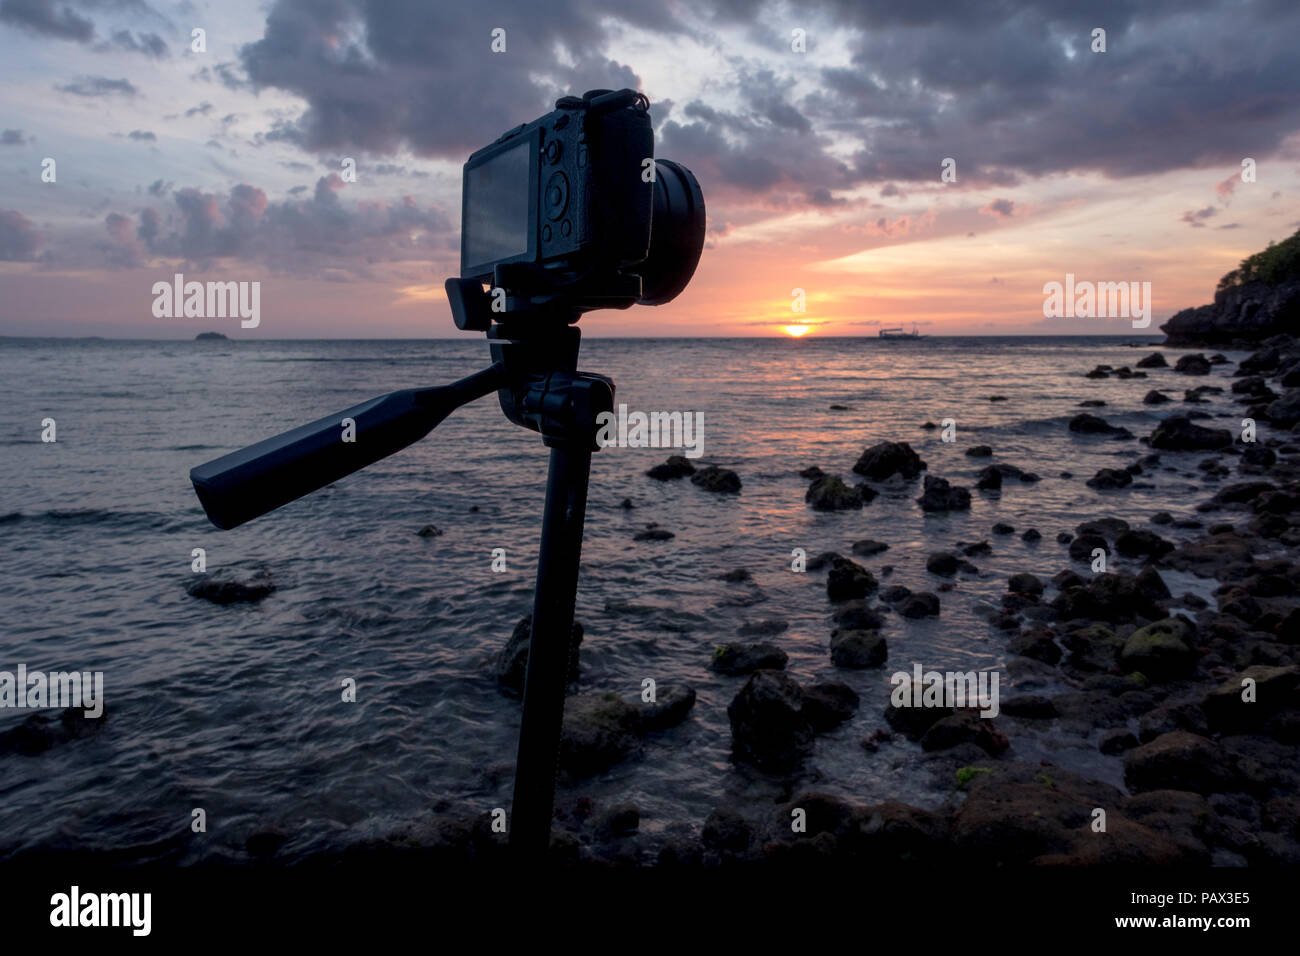 Una fotocamera mirrorless e lente su treppiede - tenendo lunga esposizione foto del tramonto su una bellissima isola rocciosa spiaggia - Malapascua Cebu - Filippine Foto Stock